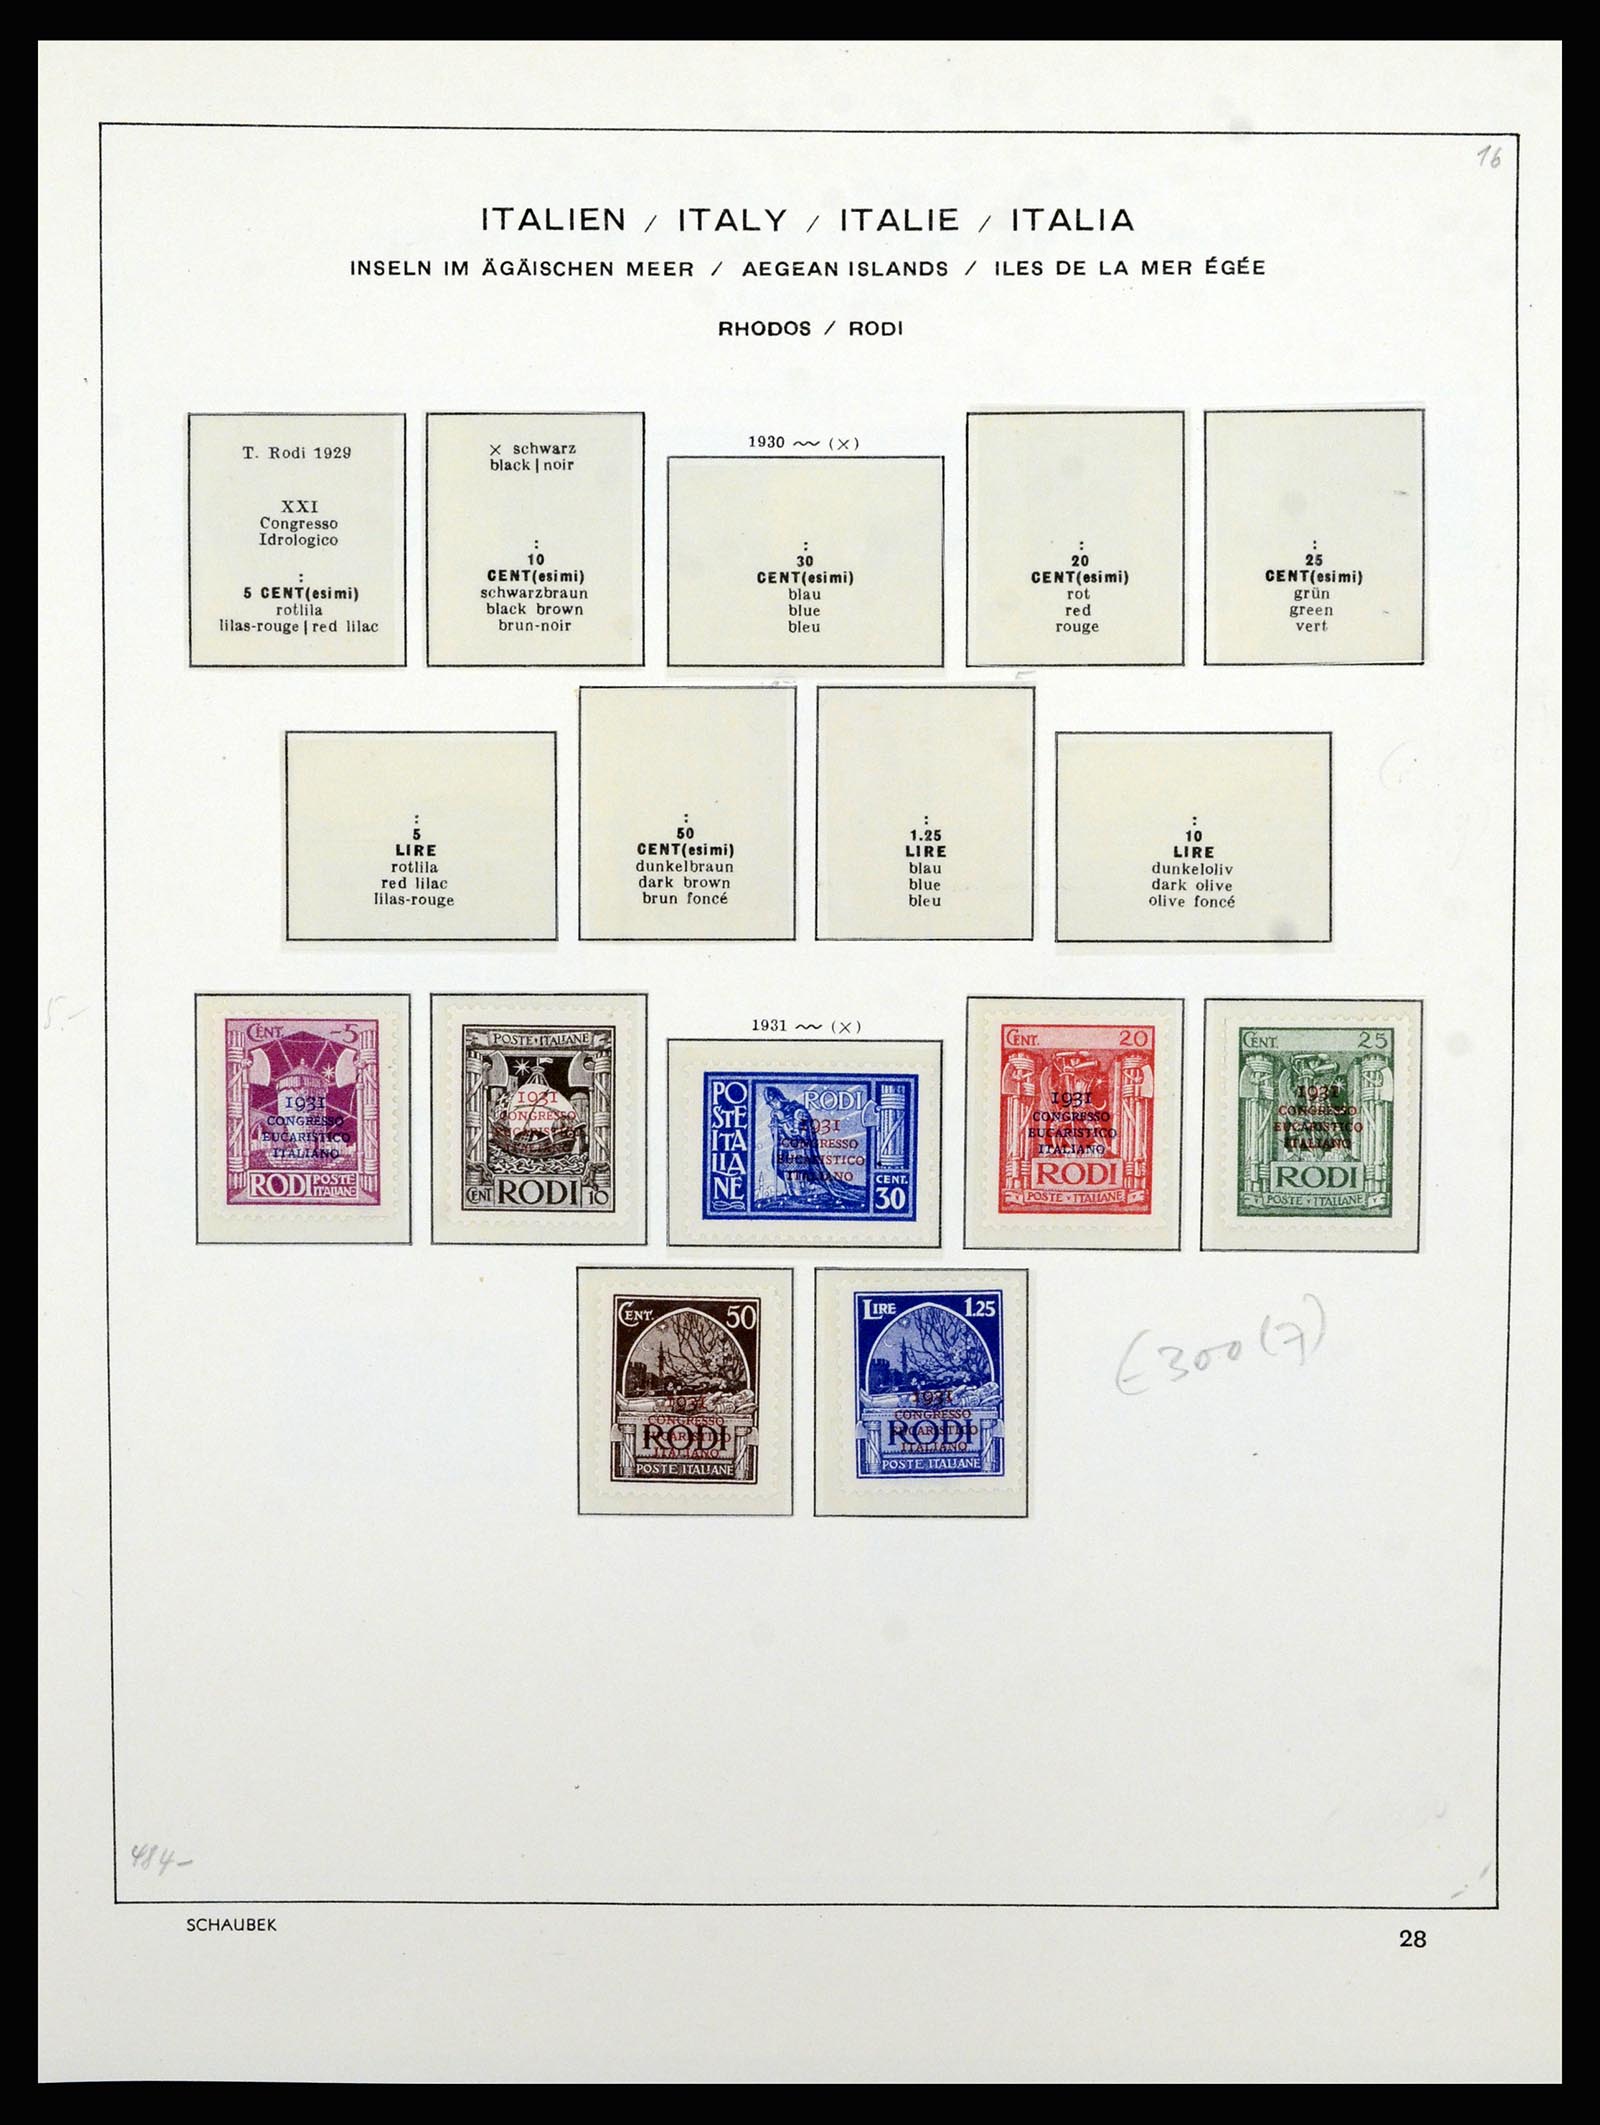 36577 055 - Stamp collection 36577 Italiaanse gebieden 1870-1940.